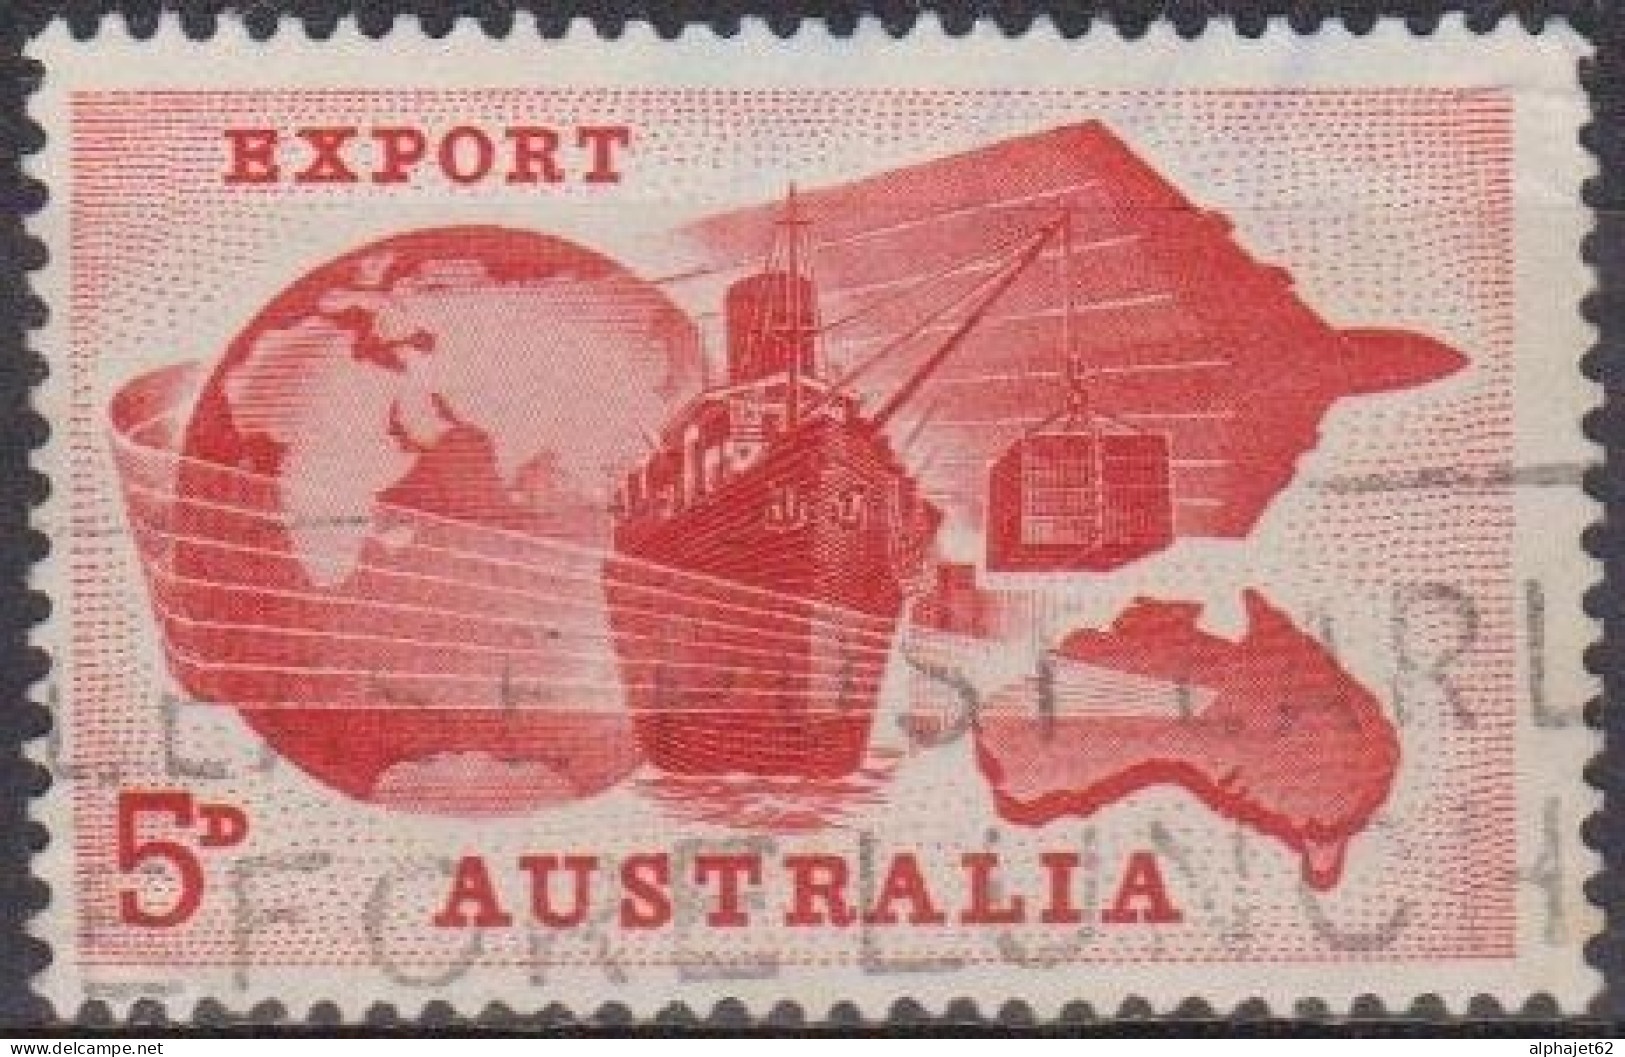 Economie - AUSTRALIE - Exportations - N° 289 - 1963 - Gebruikt